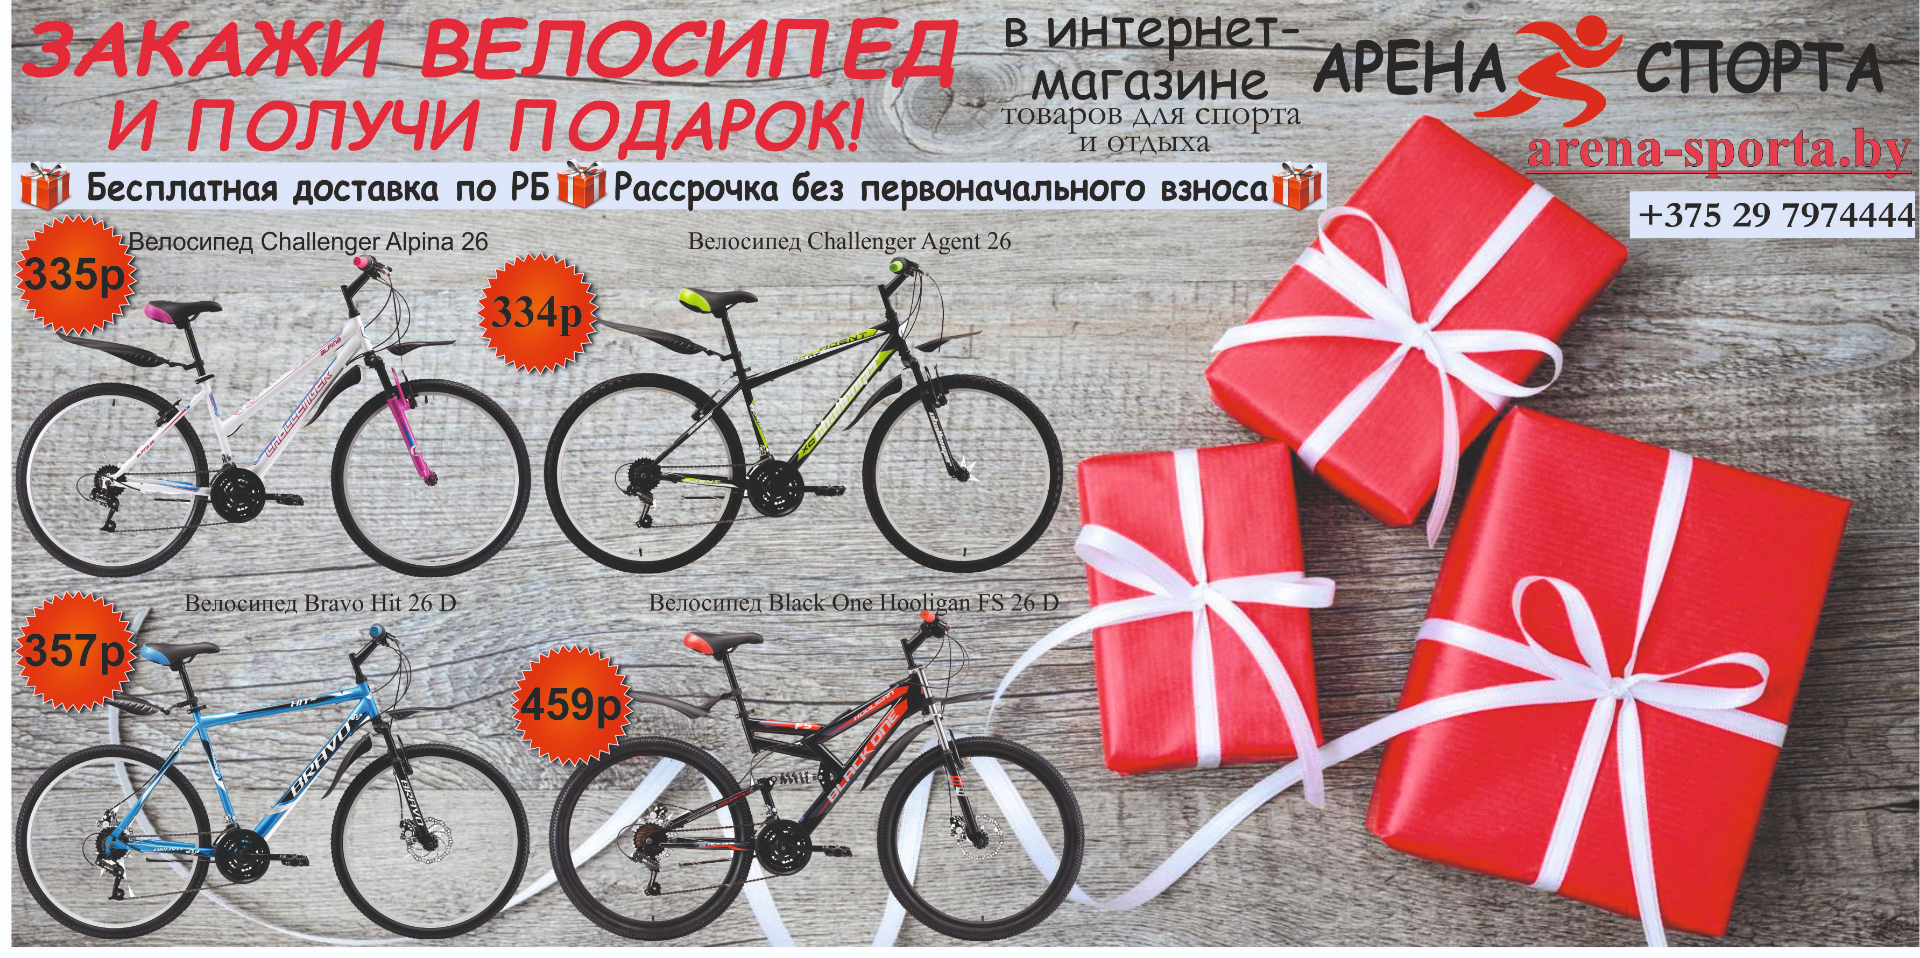 Подарок купить велосипед